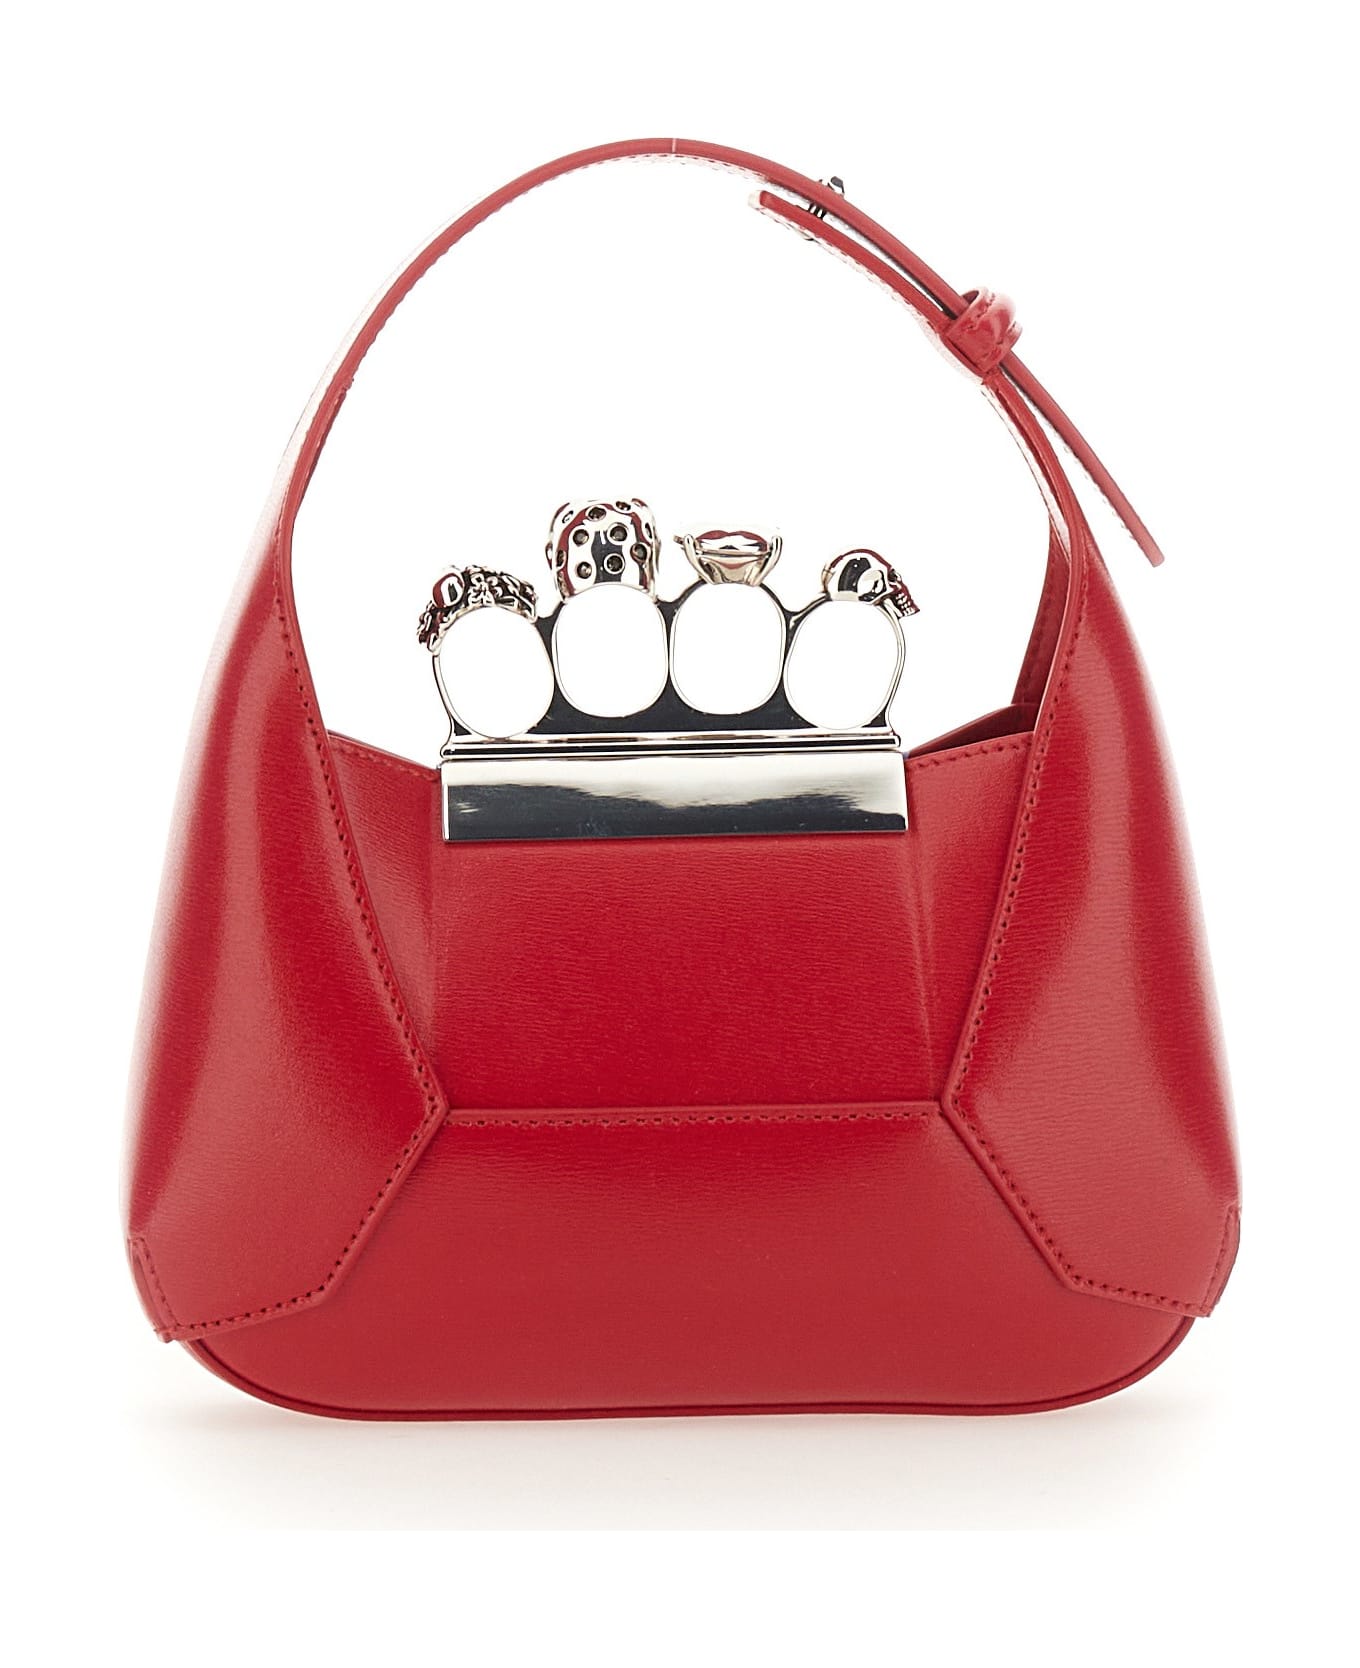 Alexander McQueen Jeweled Hobo Bag - Red